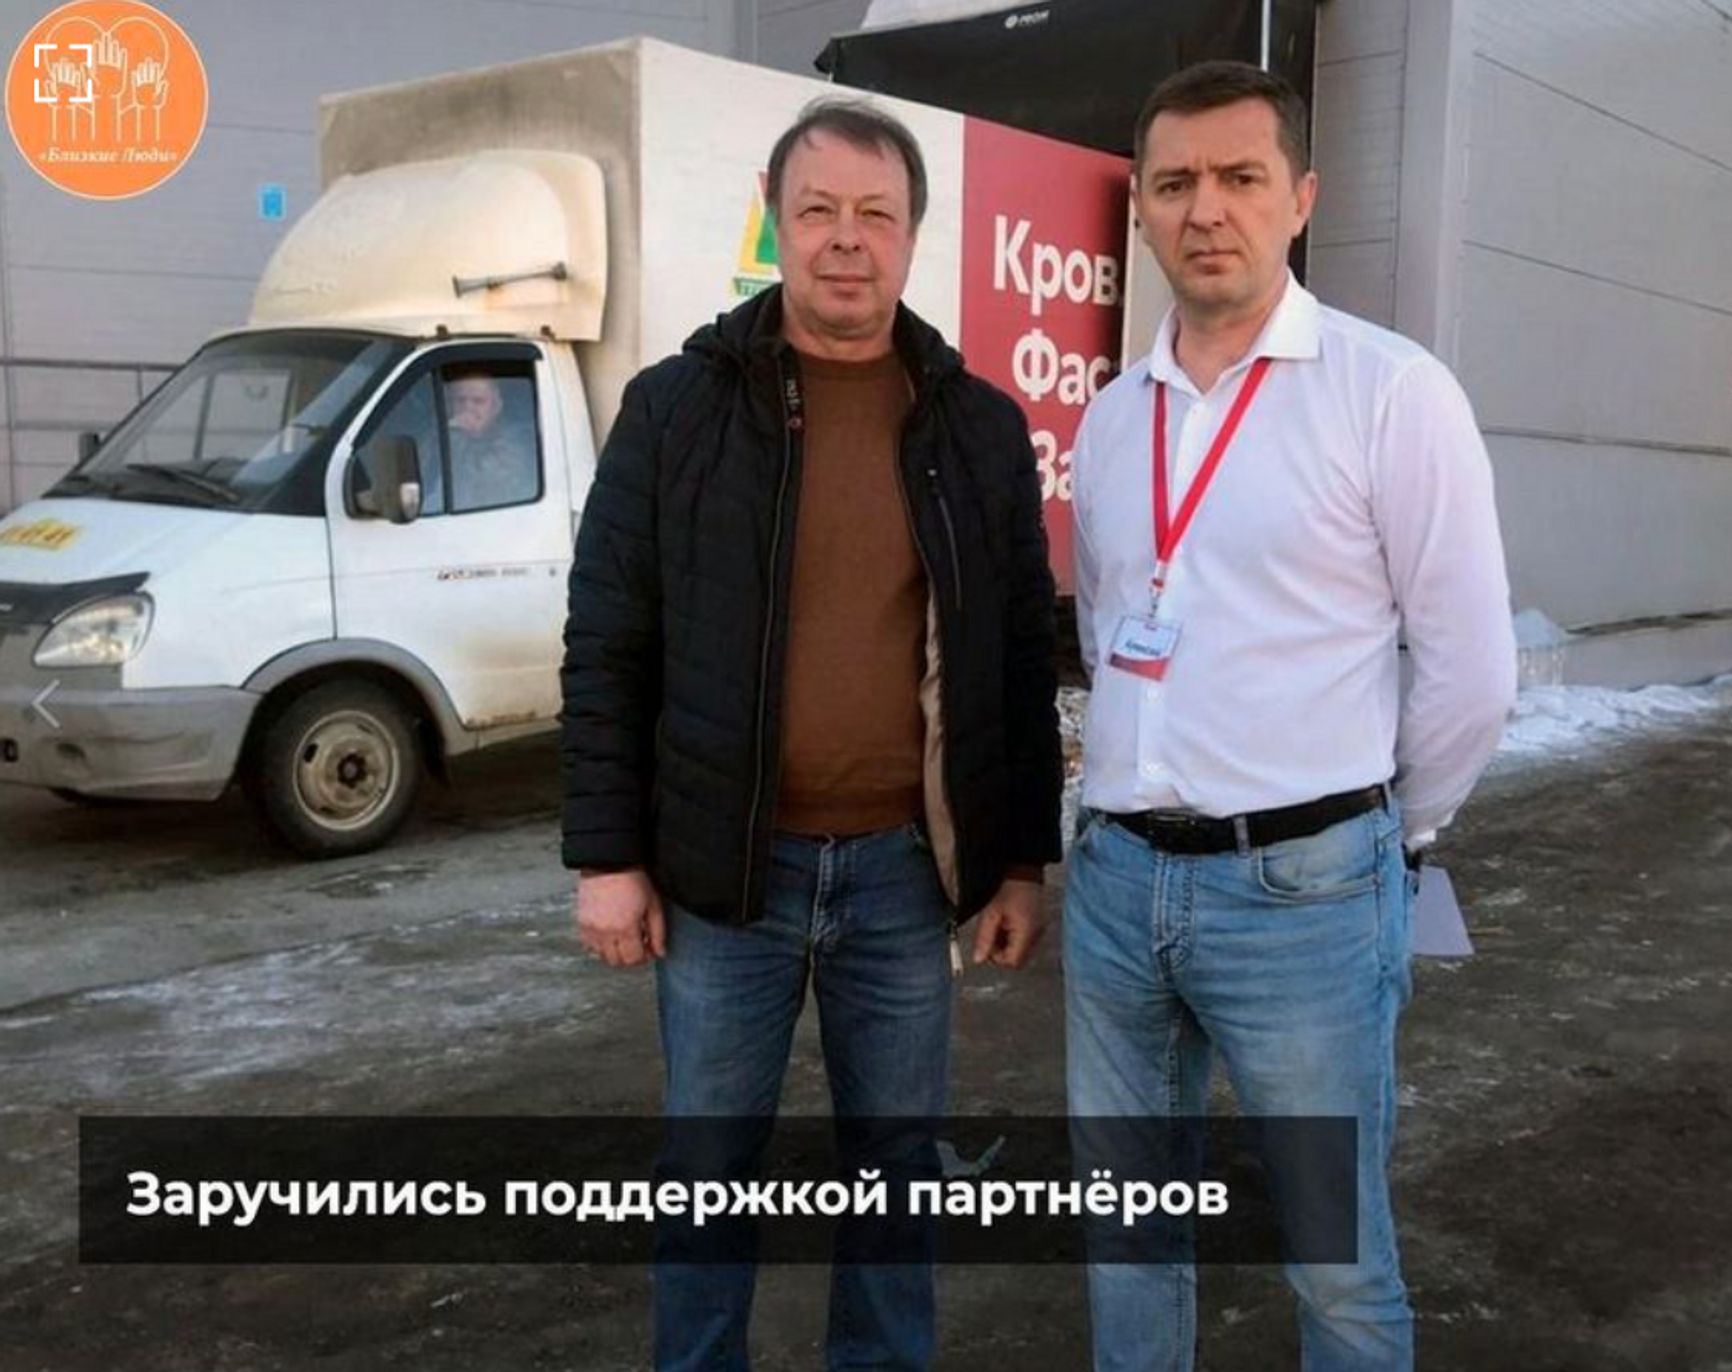 Сборщик помощи для мобилизованных позирует с Алексеем Соколовым, специалистом отдела безопасности «Ашана» города Владимира